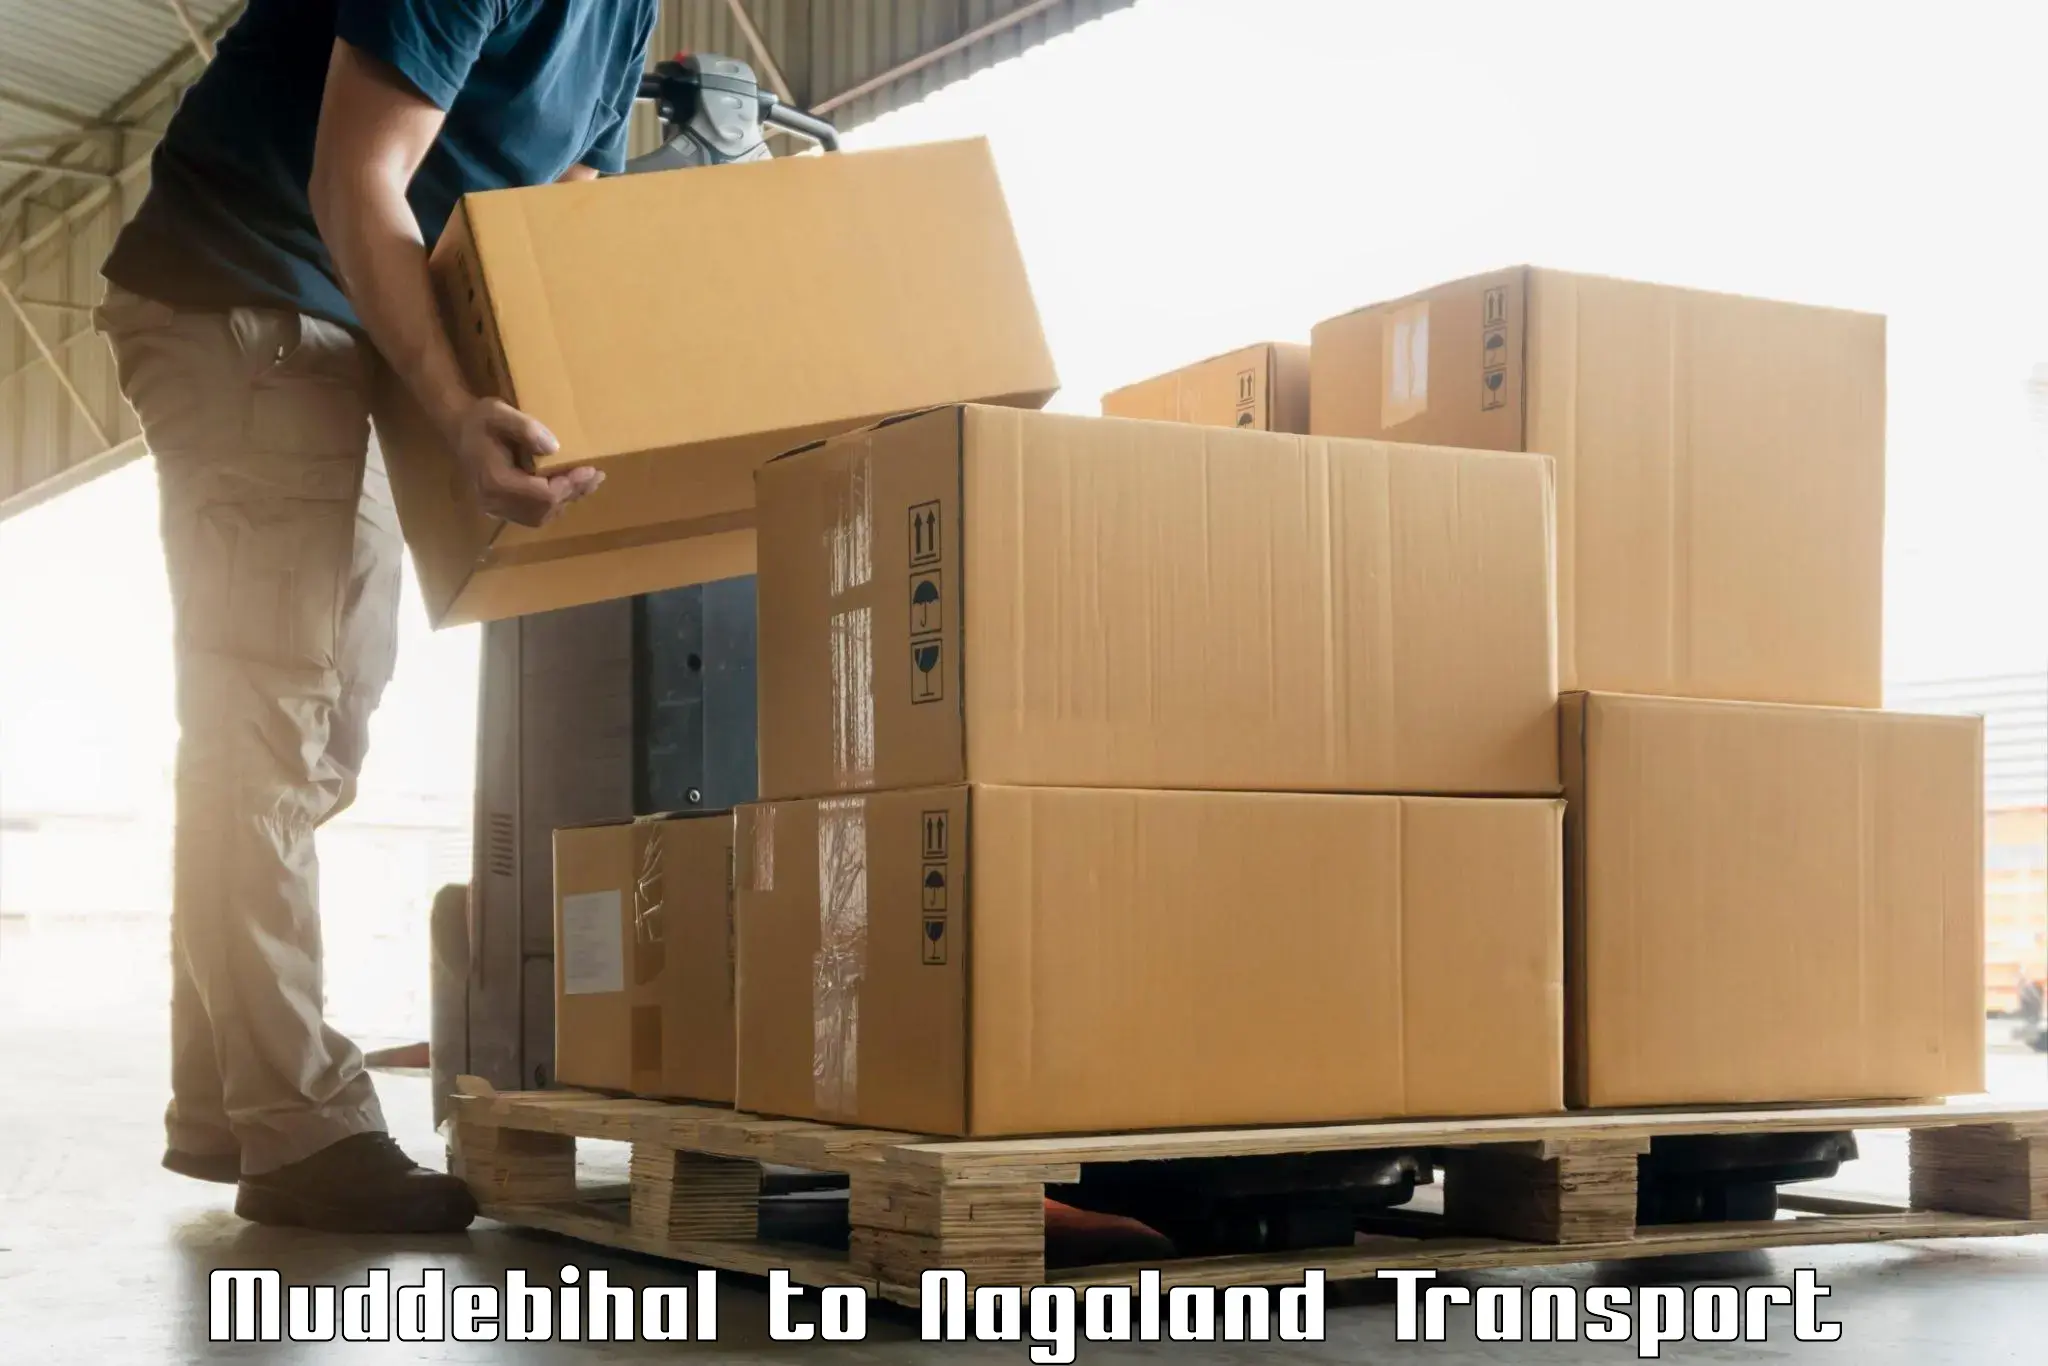 Road transport online services Muddebihal to NIT Nagaland